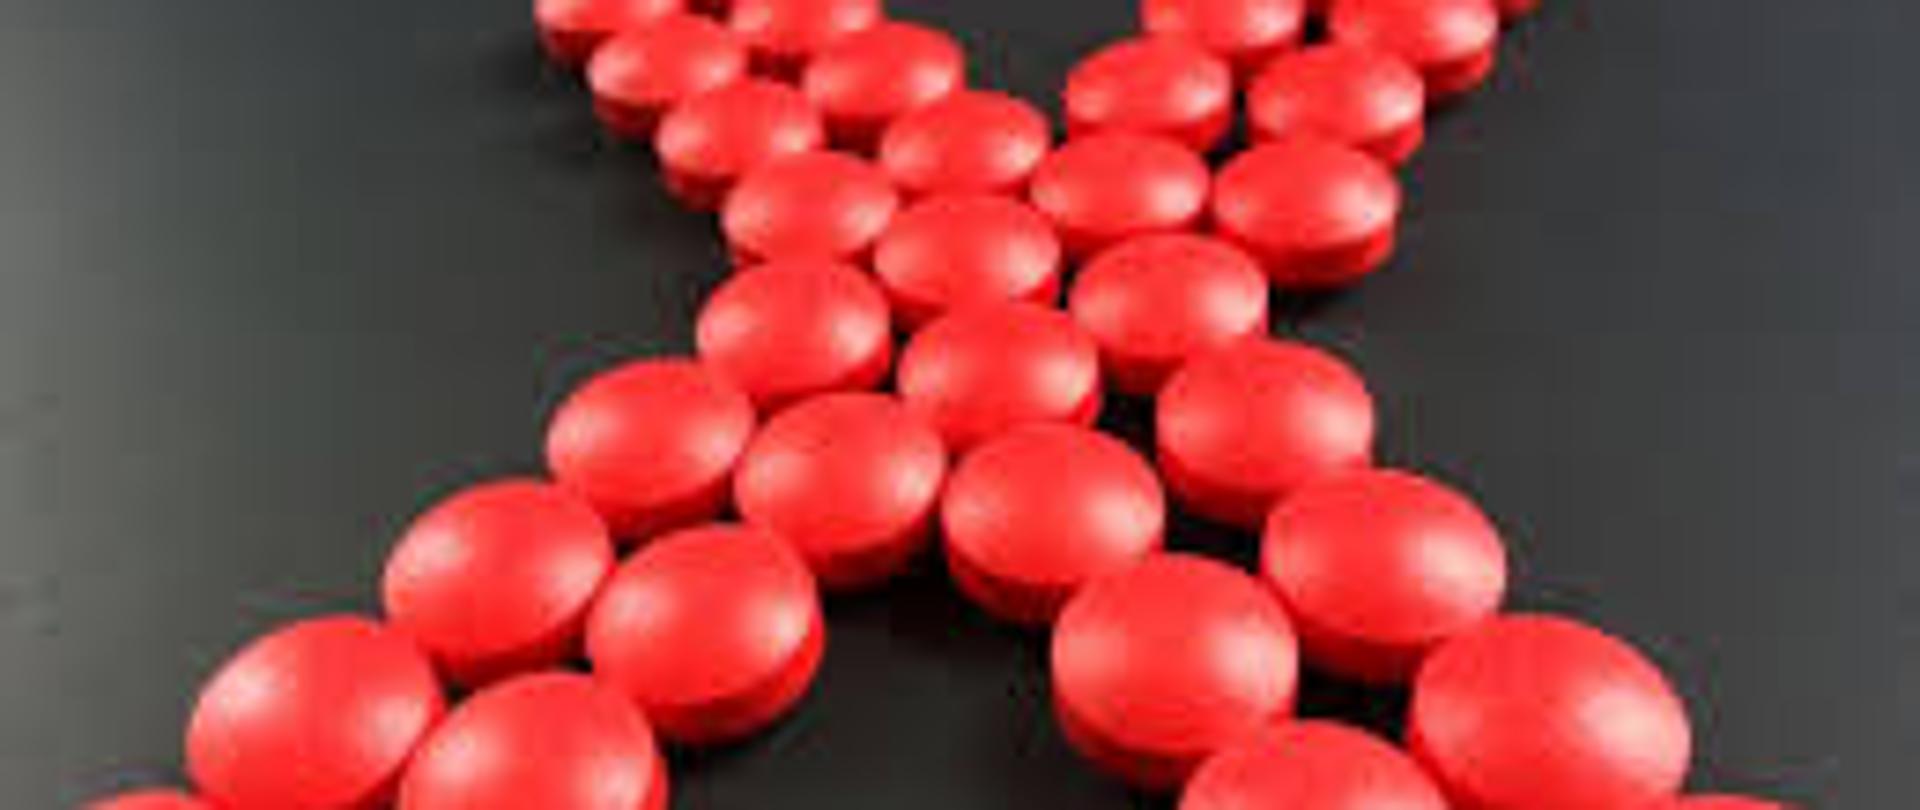 czerwone tabletki ułożone w kształt litery x